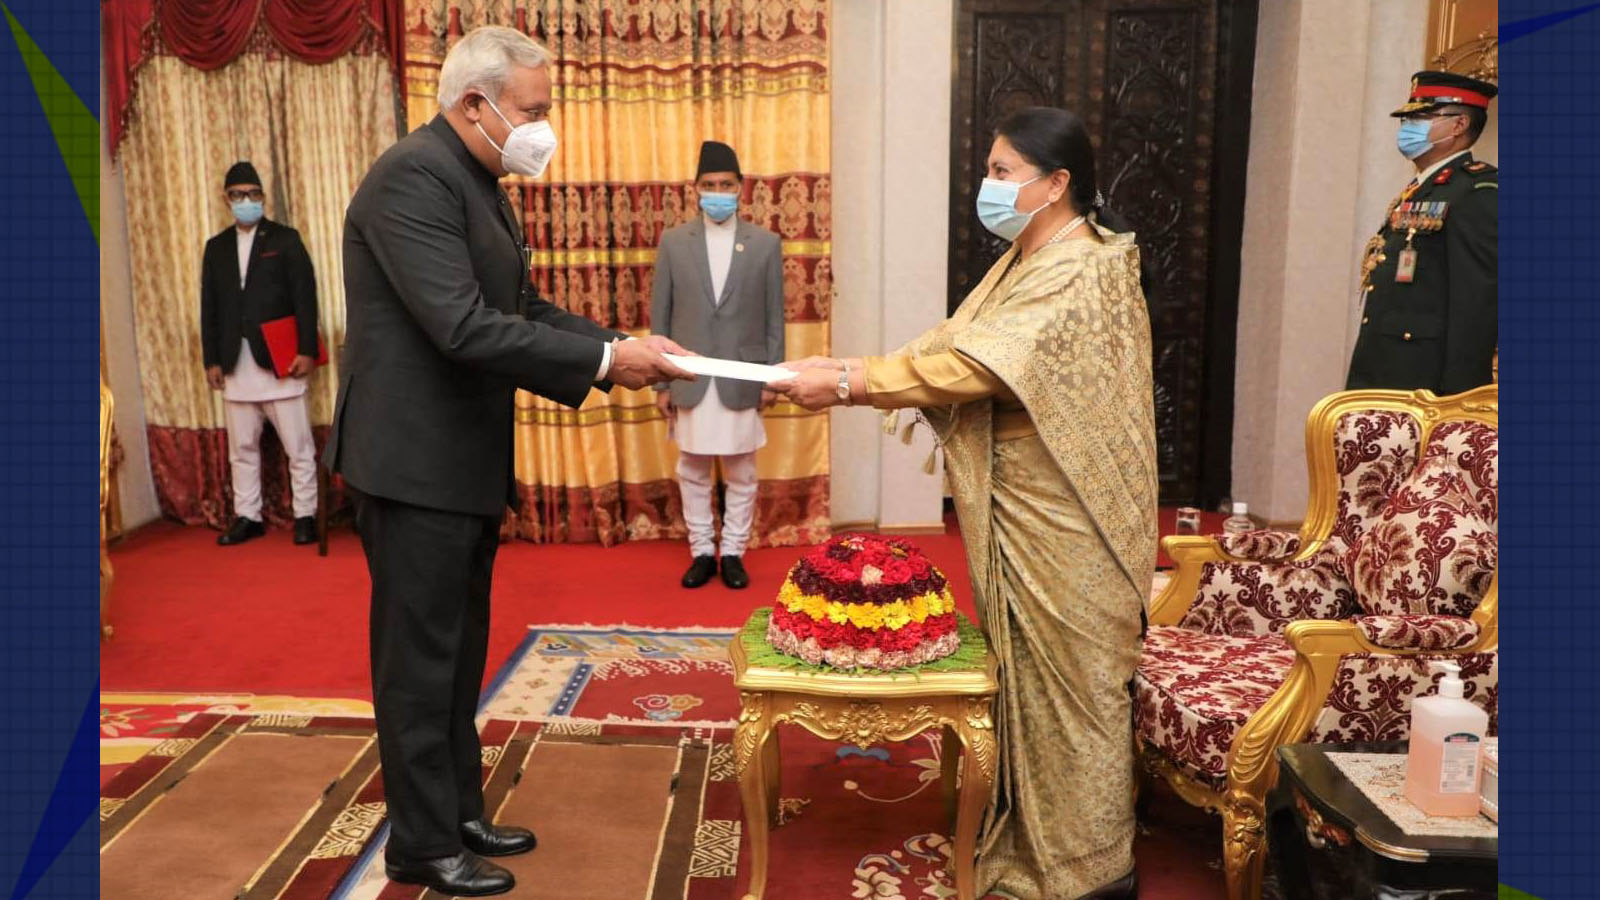 भारतीय राजदूत श्रीवास्तवले राष्ट्रपतिलाई बुझाए ओहदाको प्रमाणपत्र